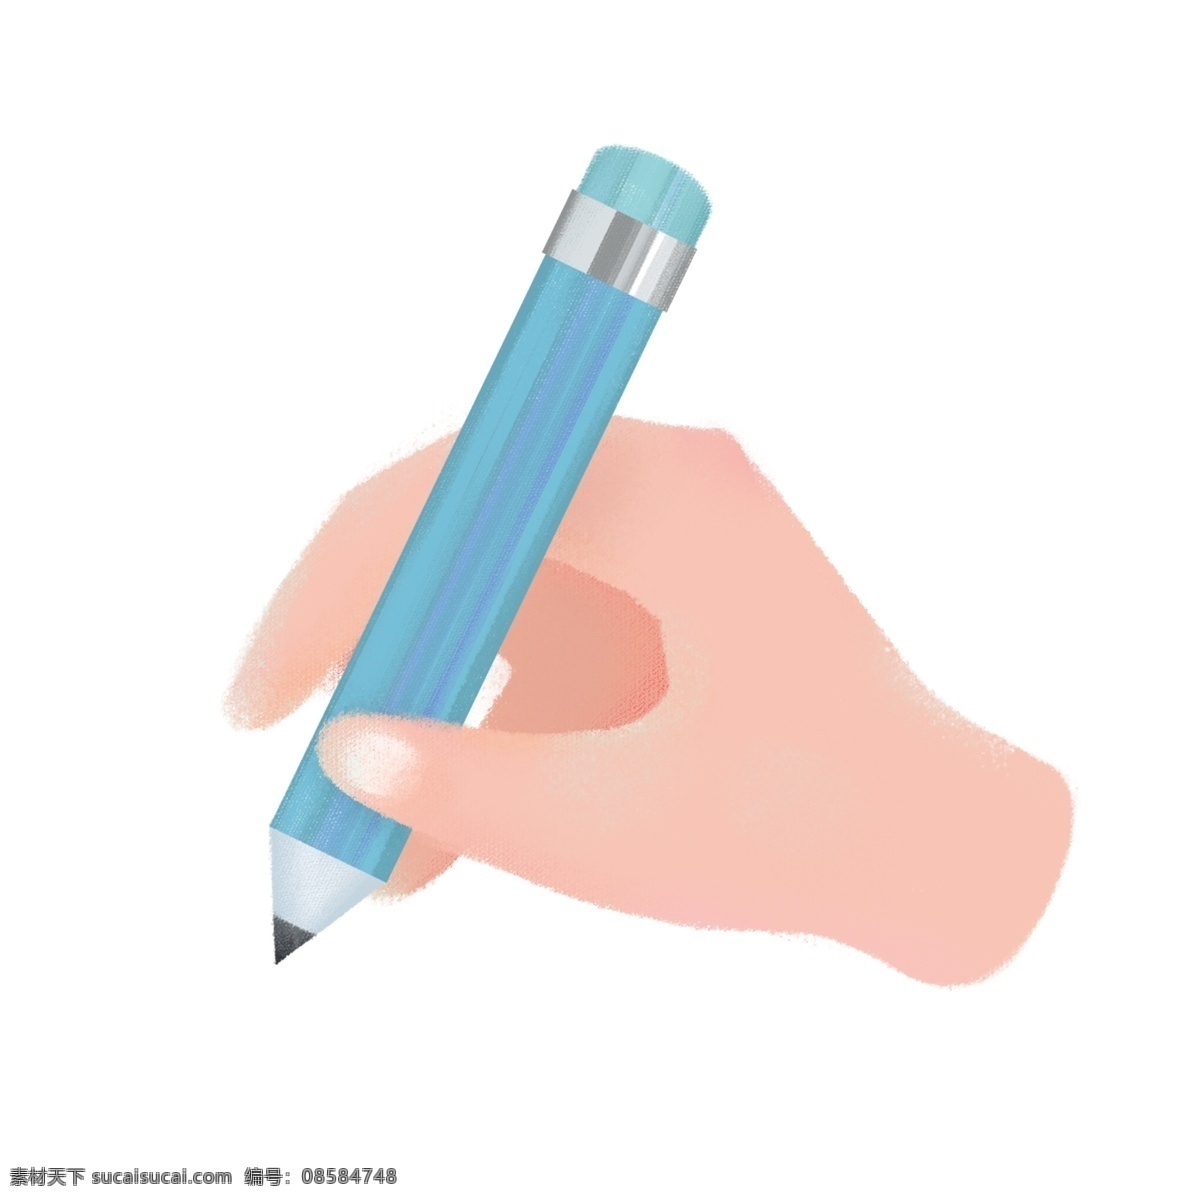 文具用品 手 蓝色 铅笔 儿童文具用品 带橡皮的铅笔 卡通手绘 学习用具 蓝色铅笔